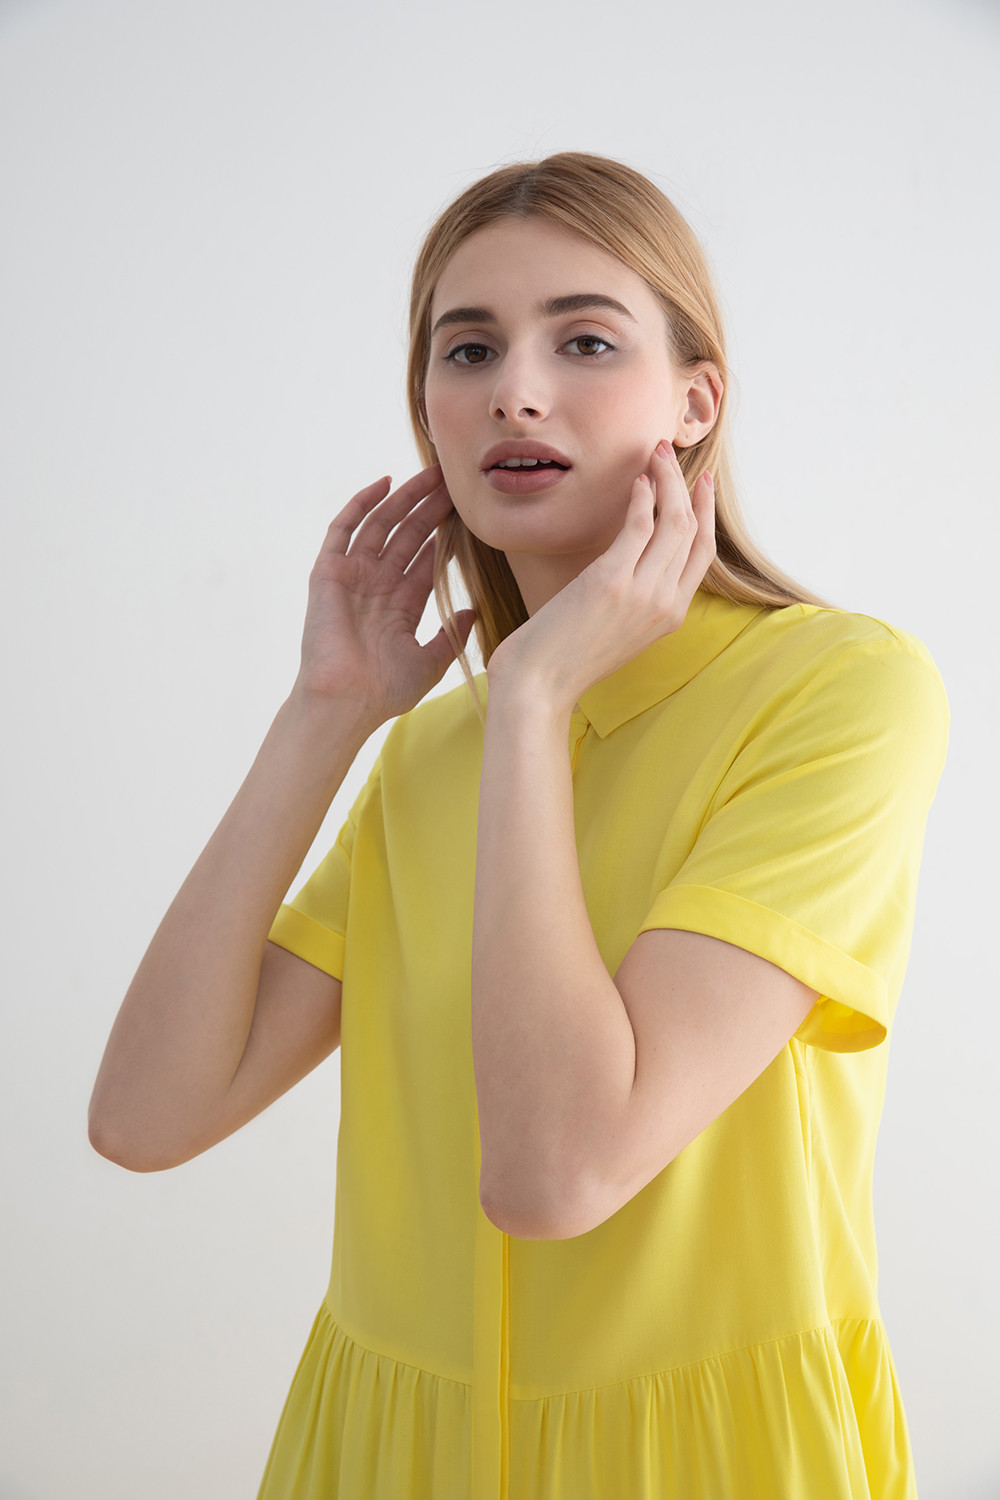 Платье-рубашка женское Concept Club 10200200811 желтое S